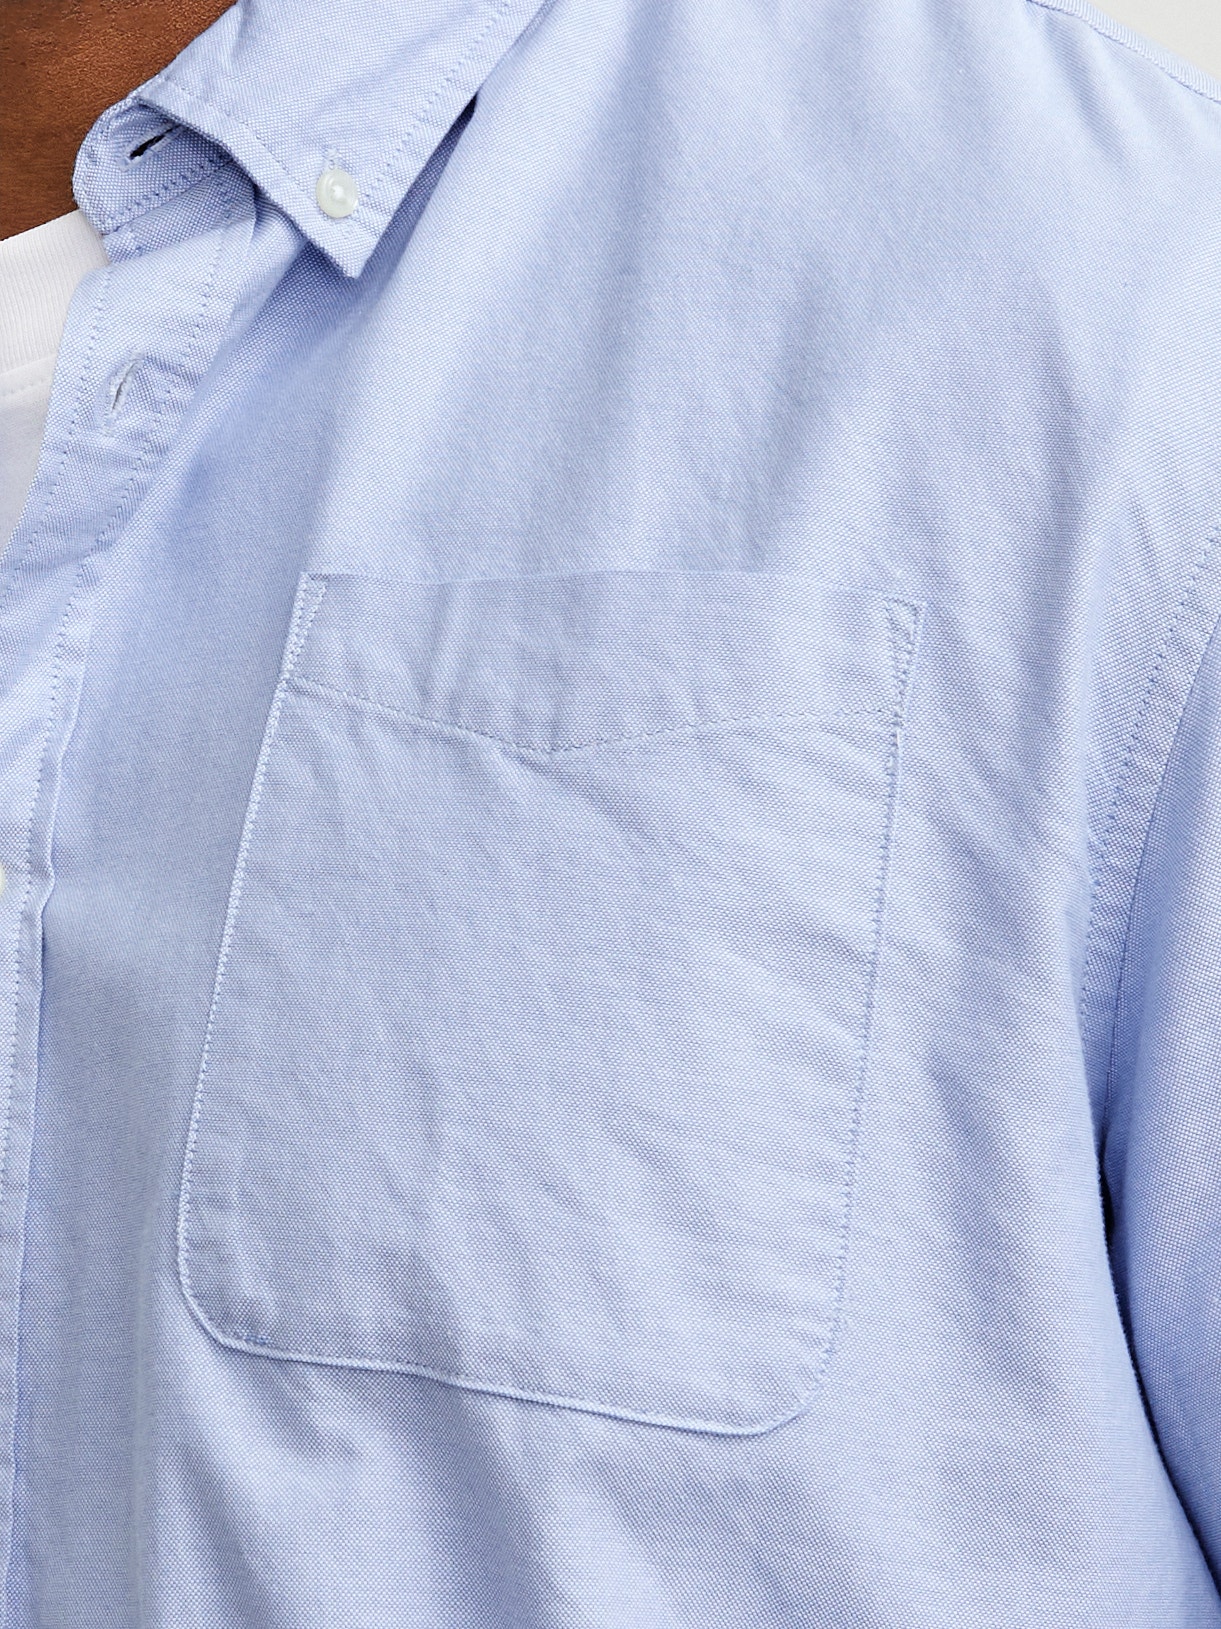 Jack & Jones Plus Size Slim Fit Casual shirt -Cashmere Blue - 12190444